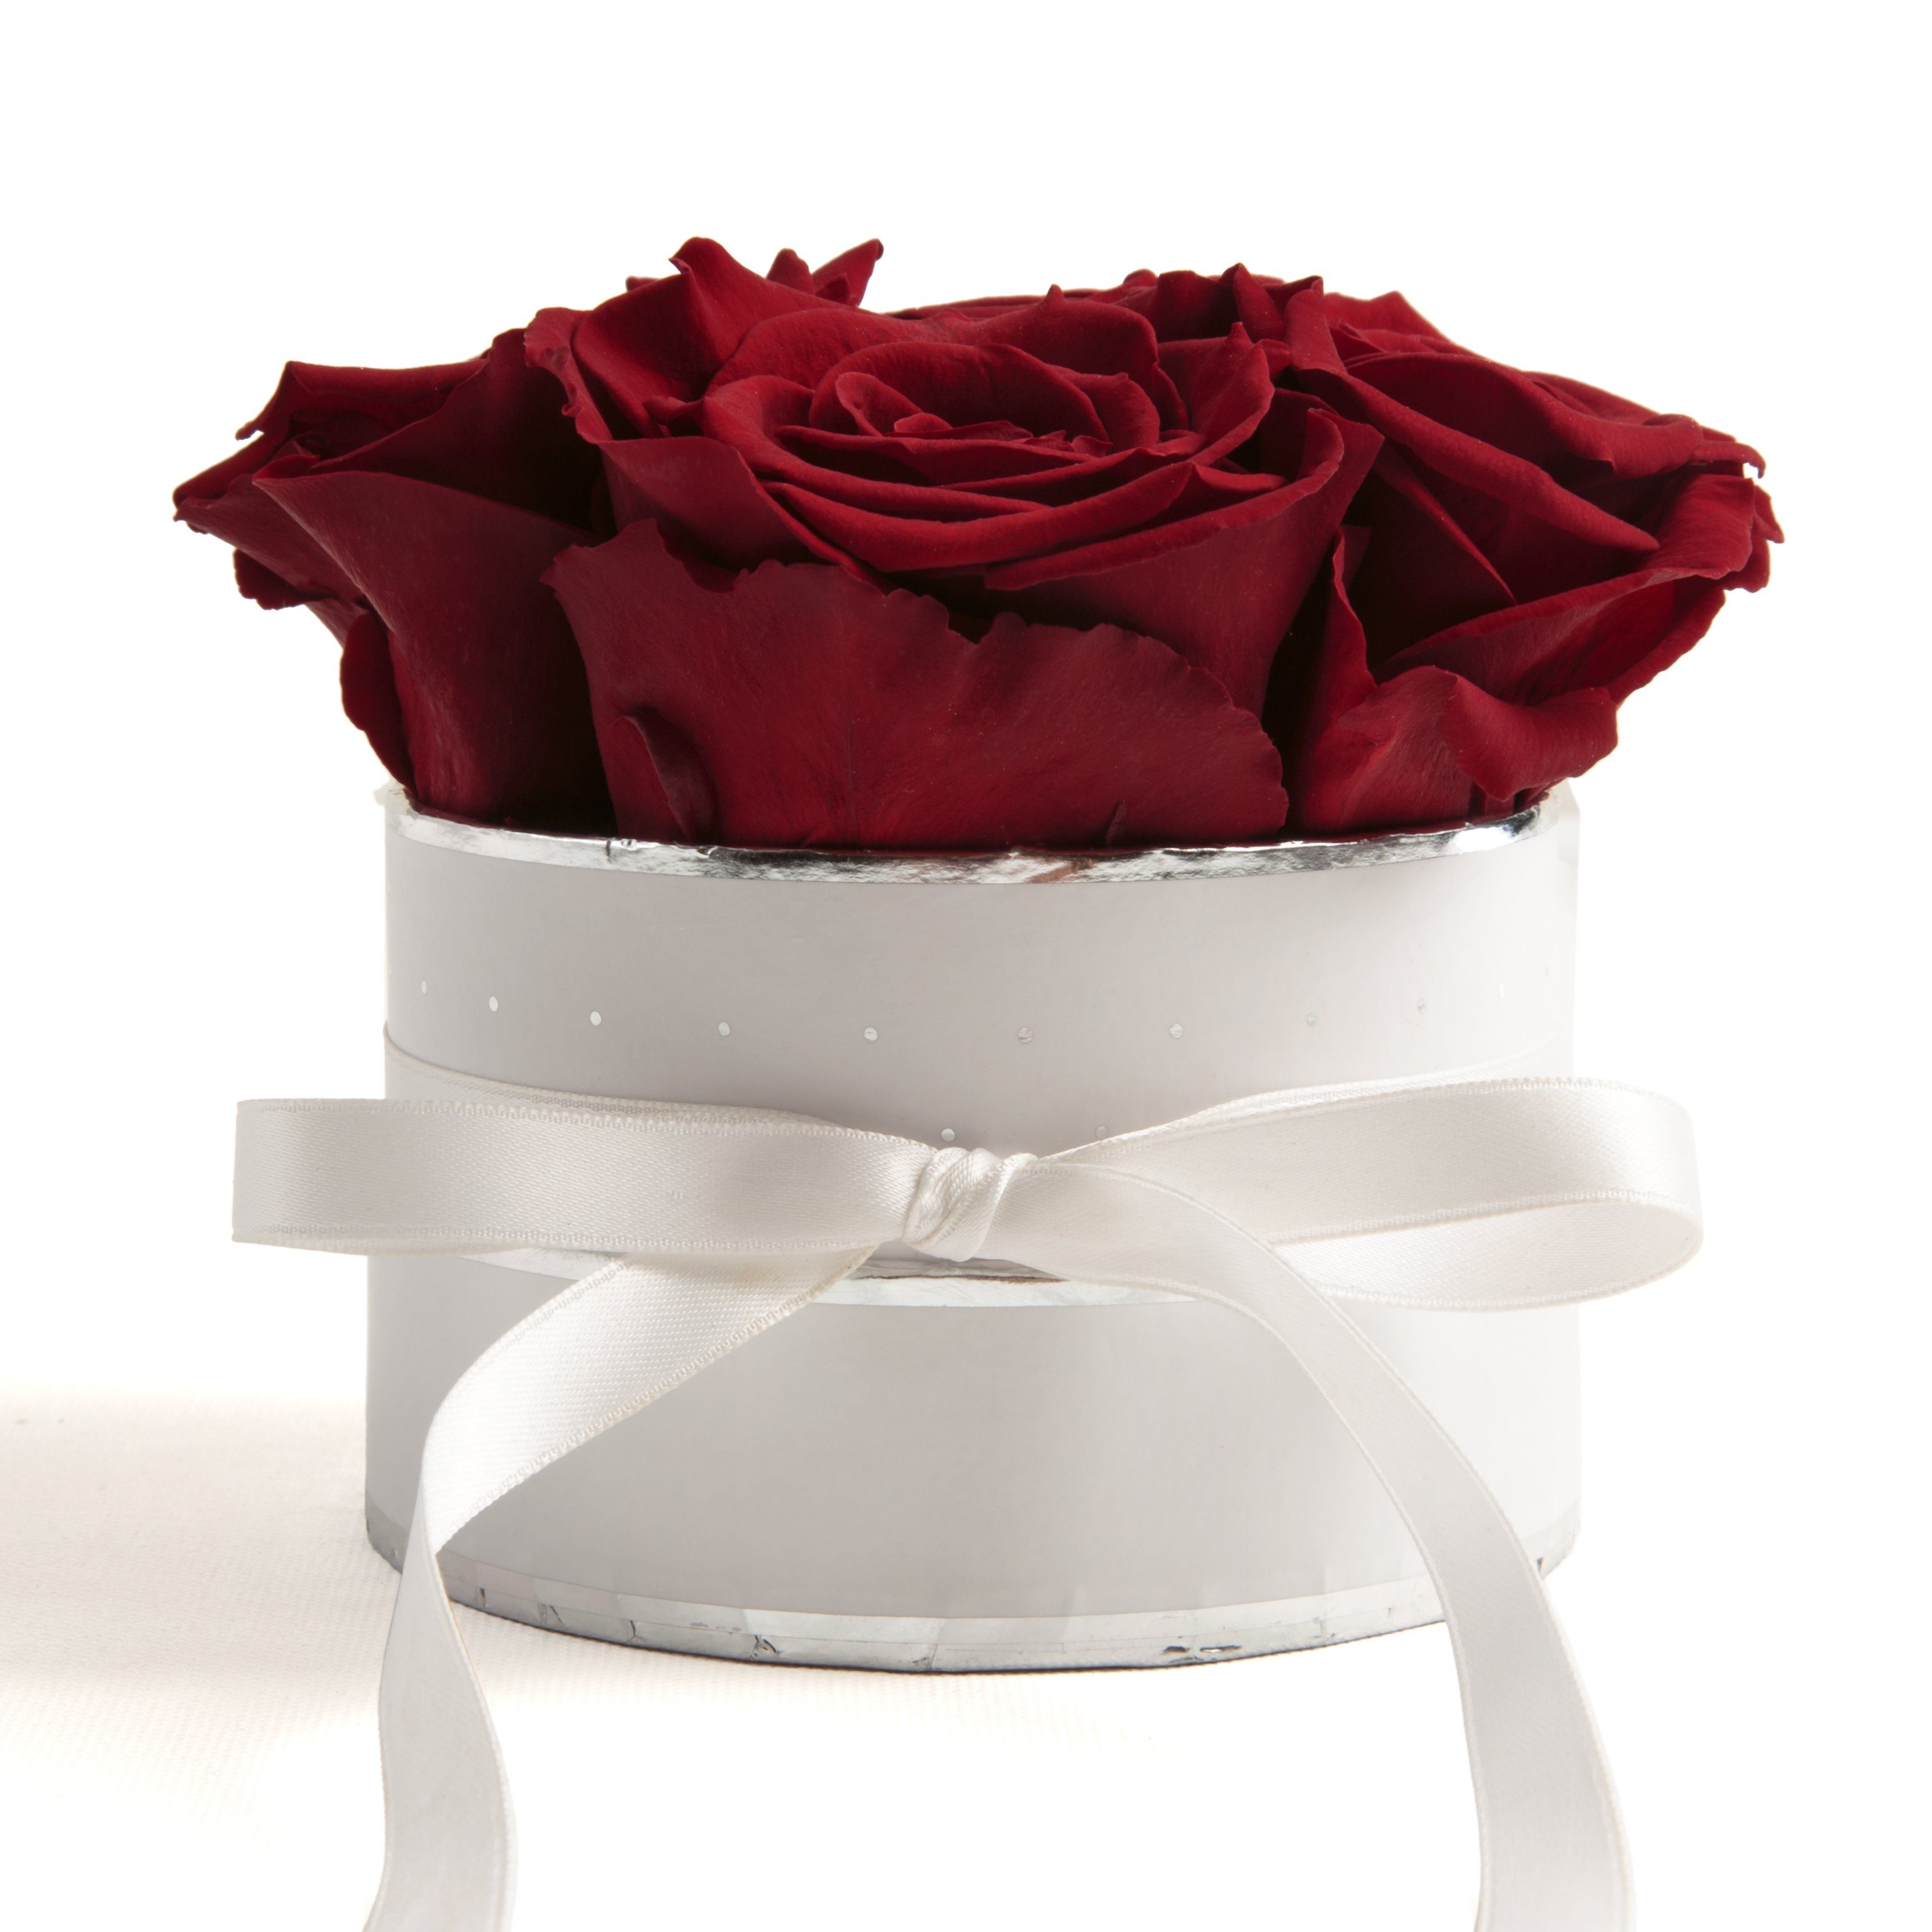 Kunstblume Infinity Rosenbox weiß rund 4 konservierte Rosen inklusiv Geschenkbox Rose, ROSEMARIE SCHULZ Heidelberg, Höhe 10 cm, echte Rosen haltbar 3 Jahre Burgundy